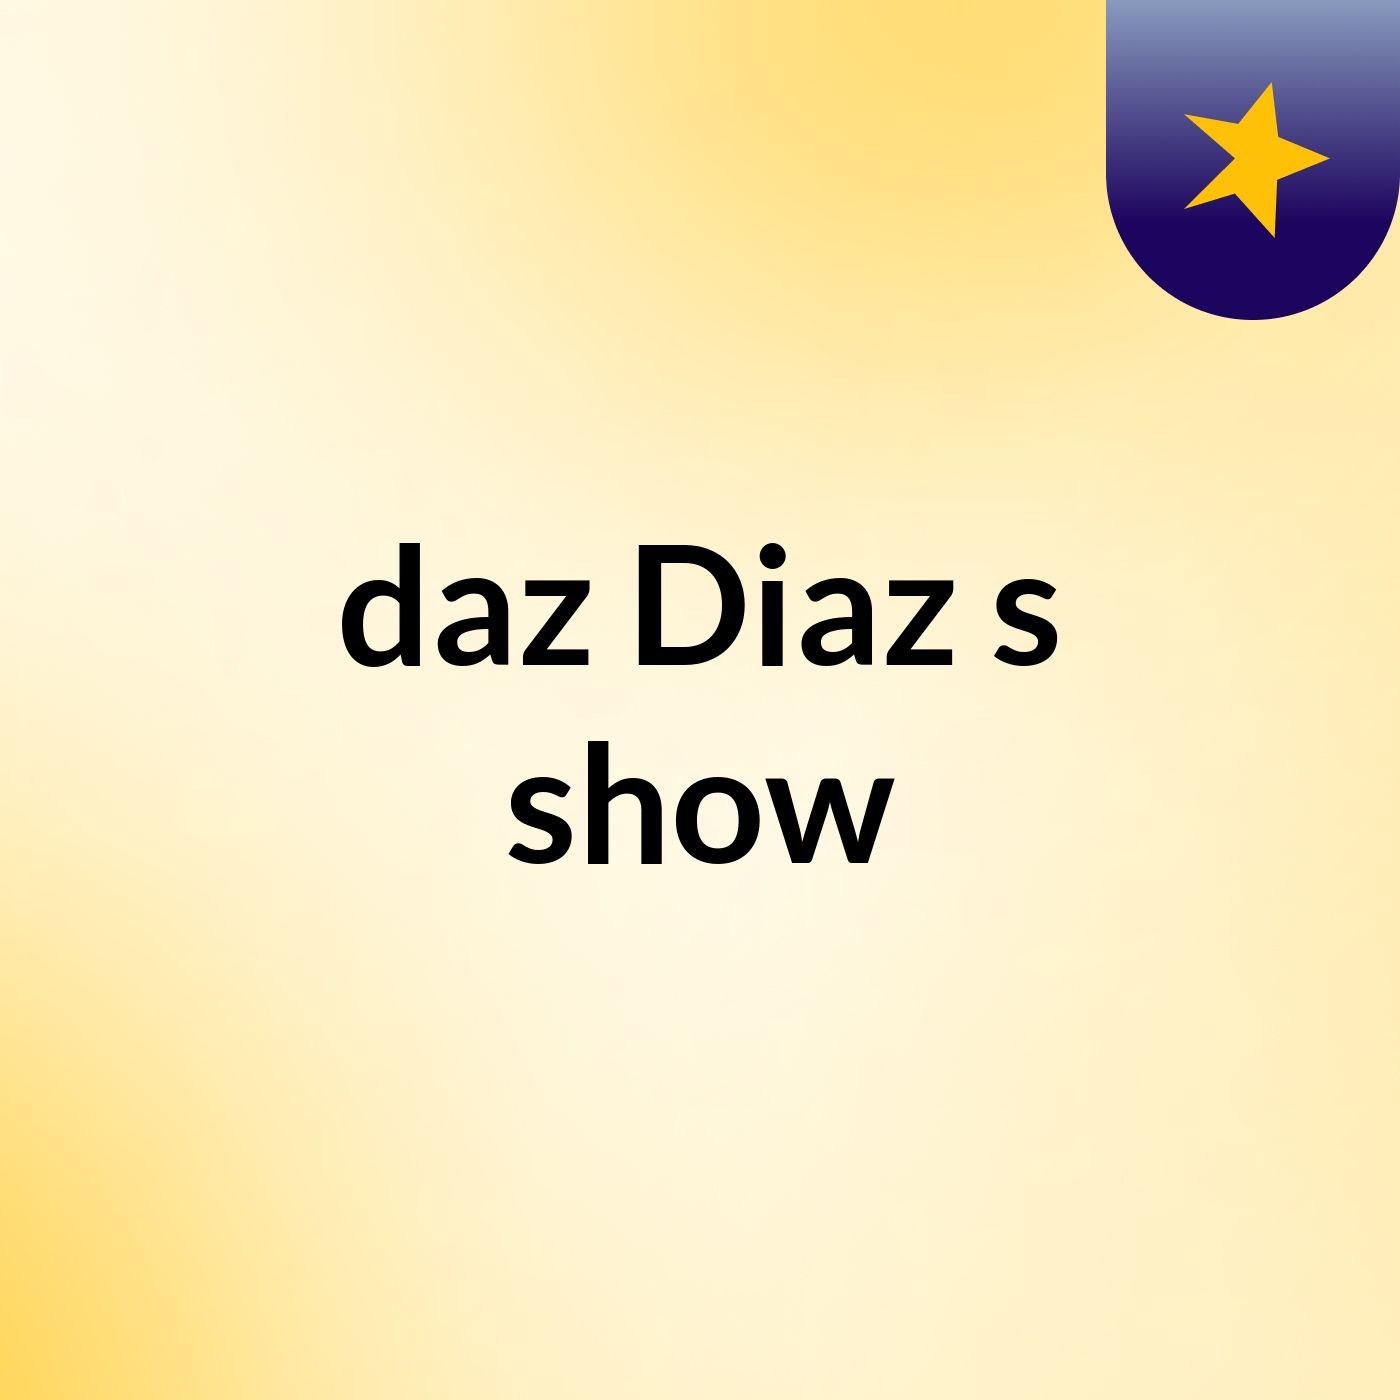 daz Diaz's show